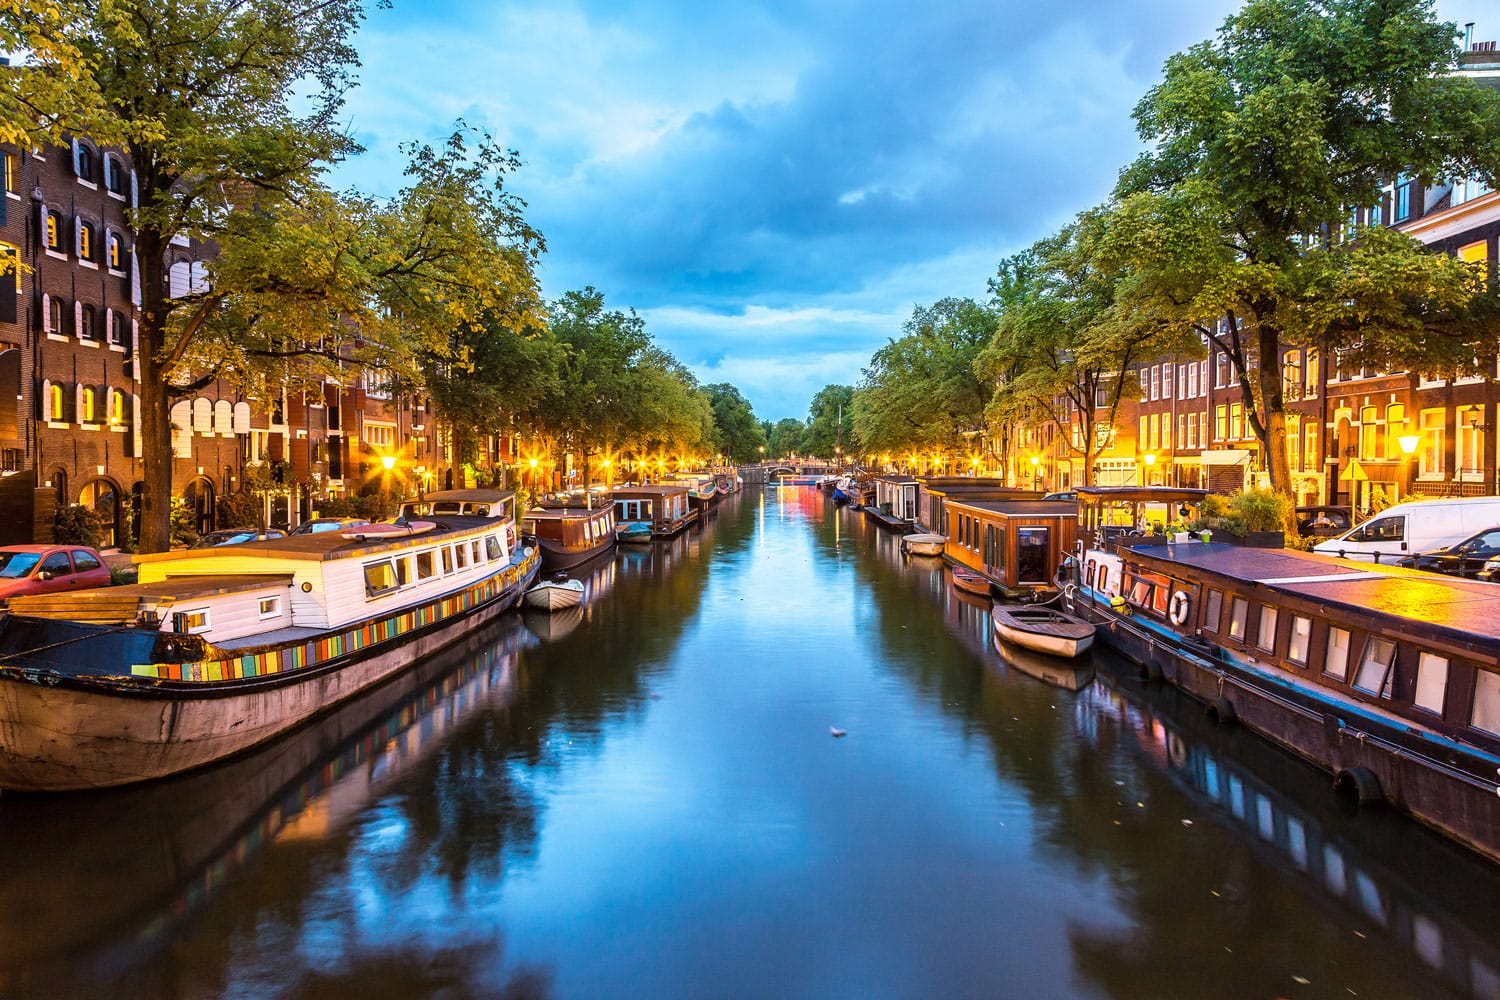 amsterdam-canals-netherlands-shutterstock_245749633.jpg